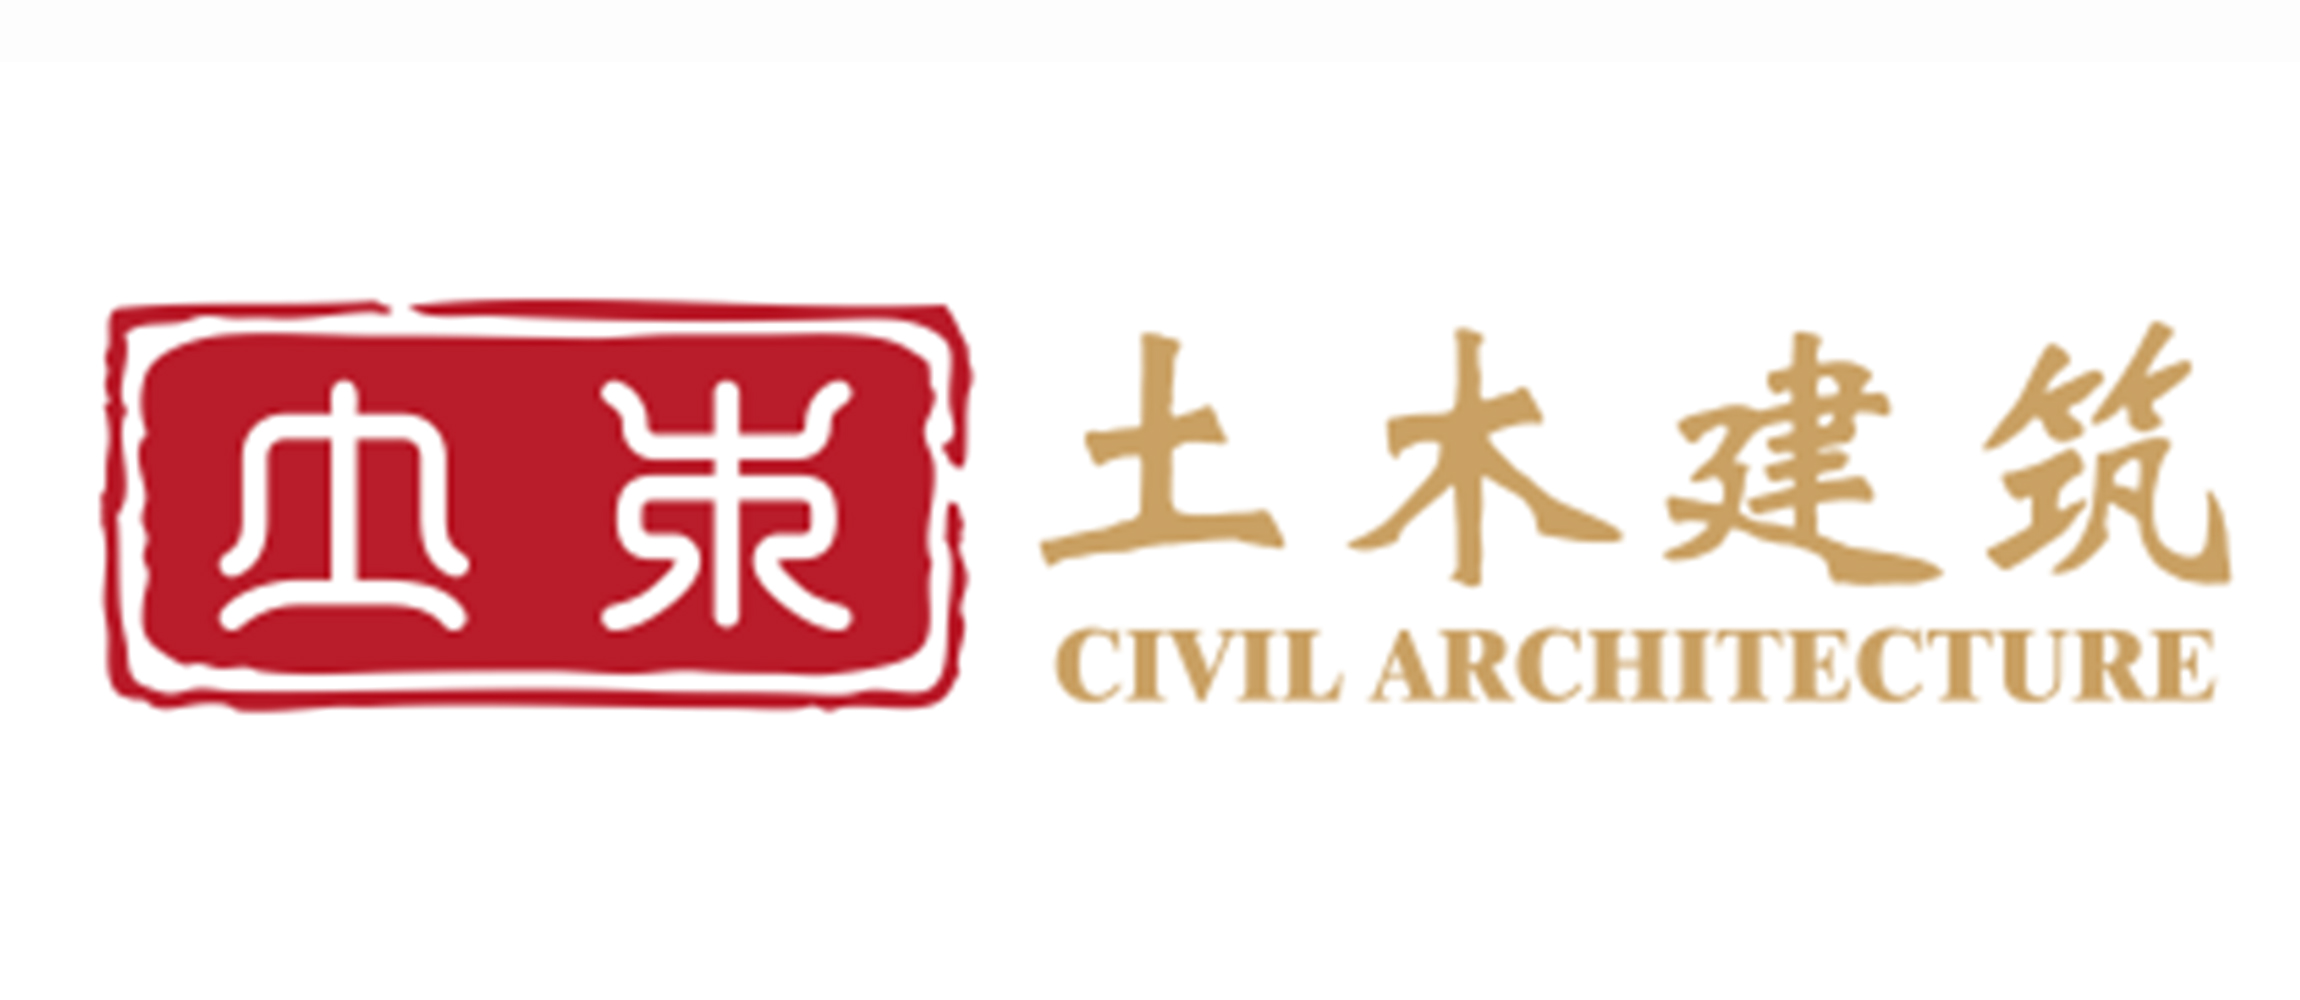 广州市土木建筑设计顾问有限公司